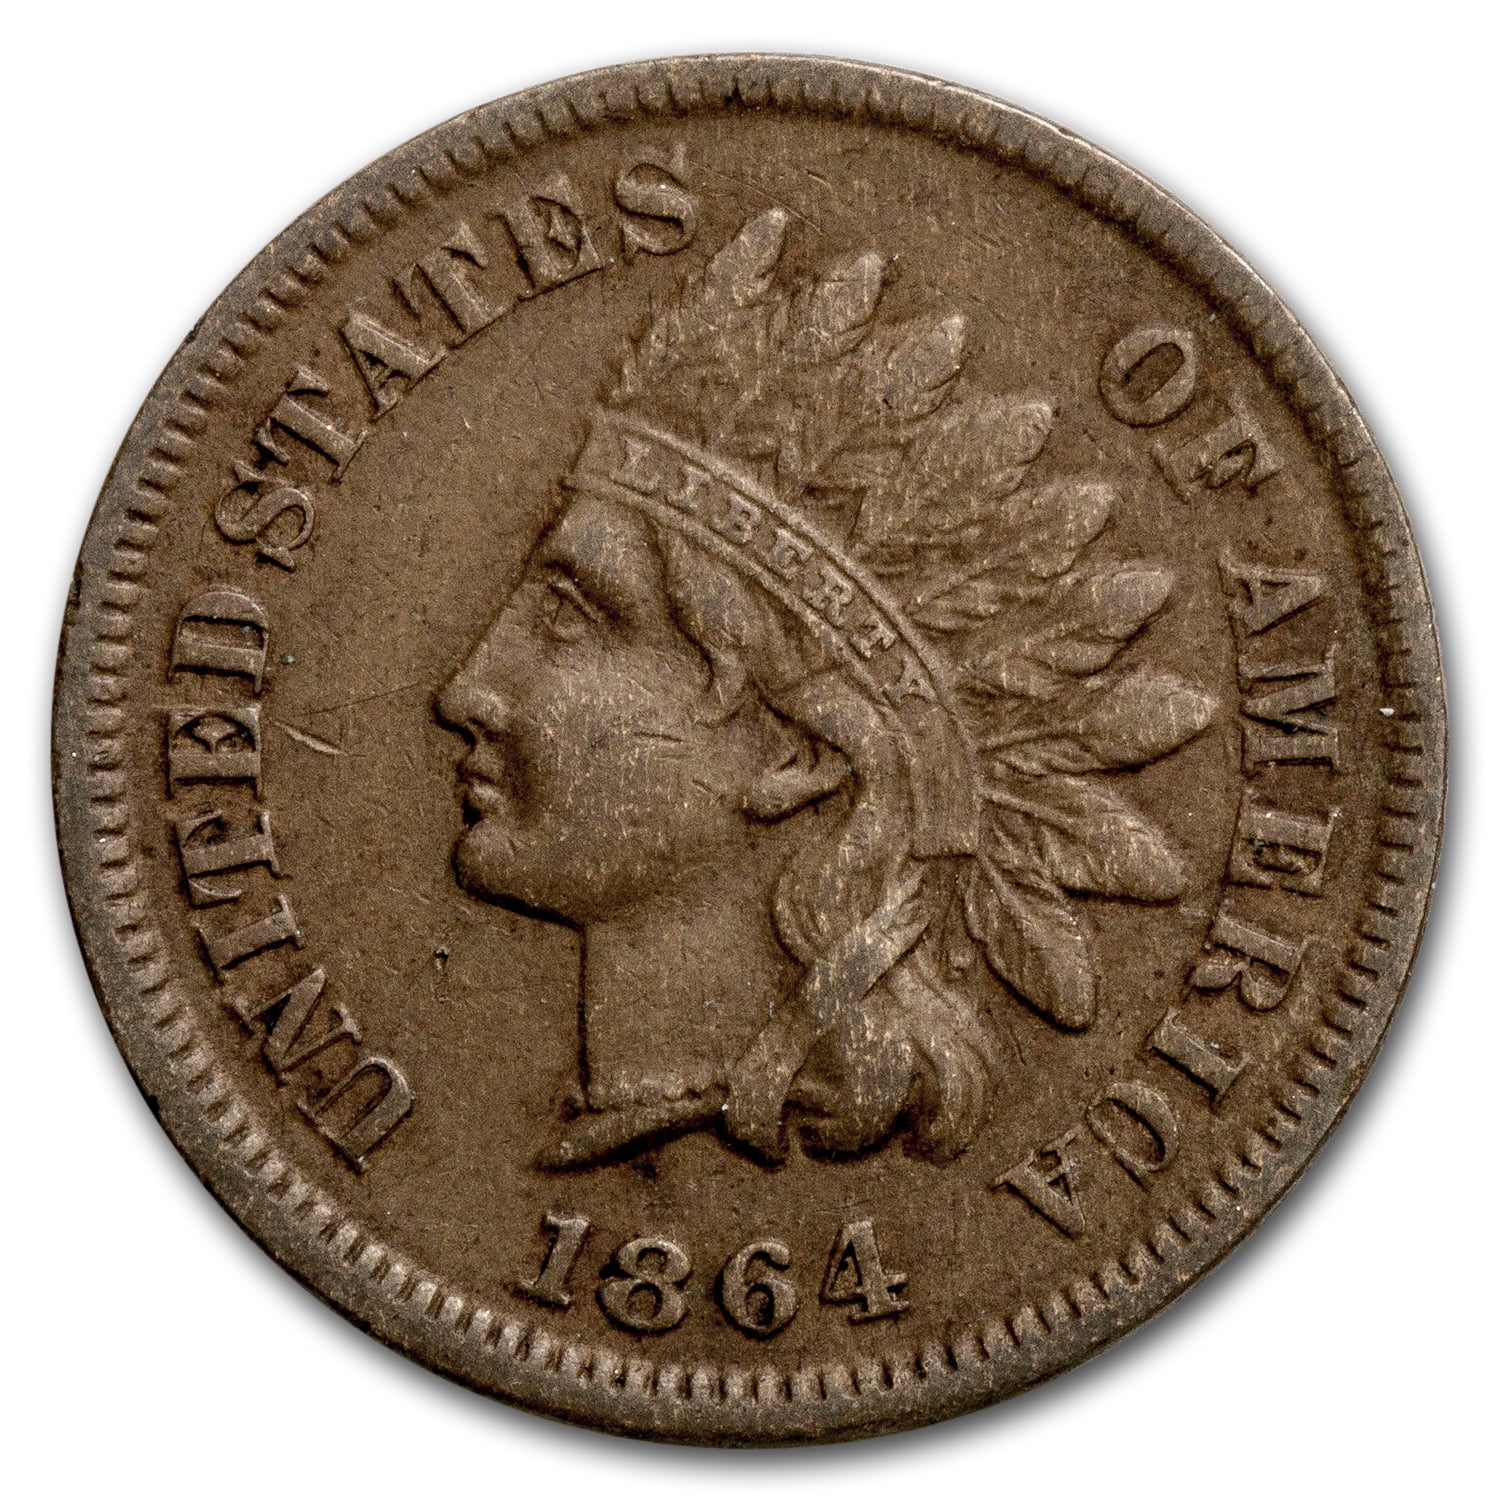 U.S. Mint - 1864-L Indian Head Cent XF - Walmart.com - Walmart.com